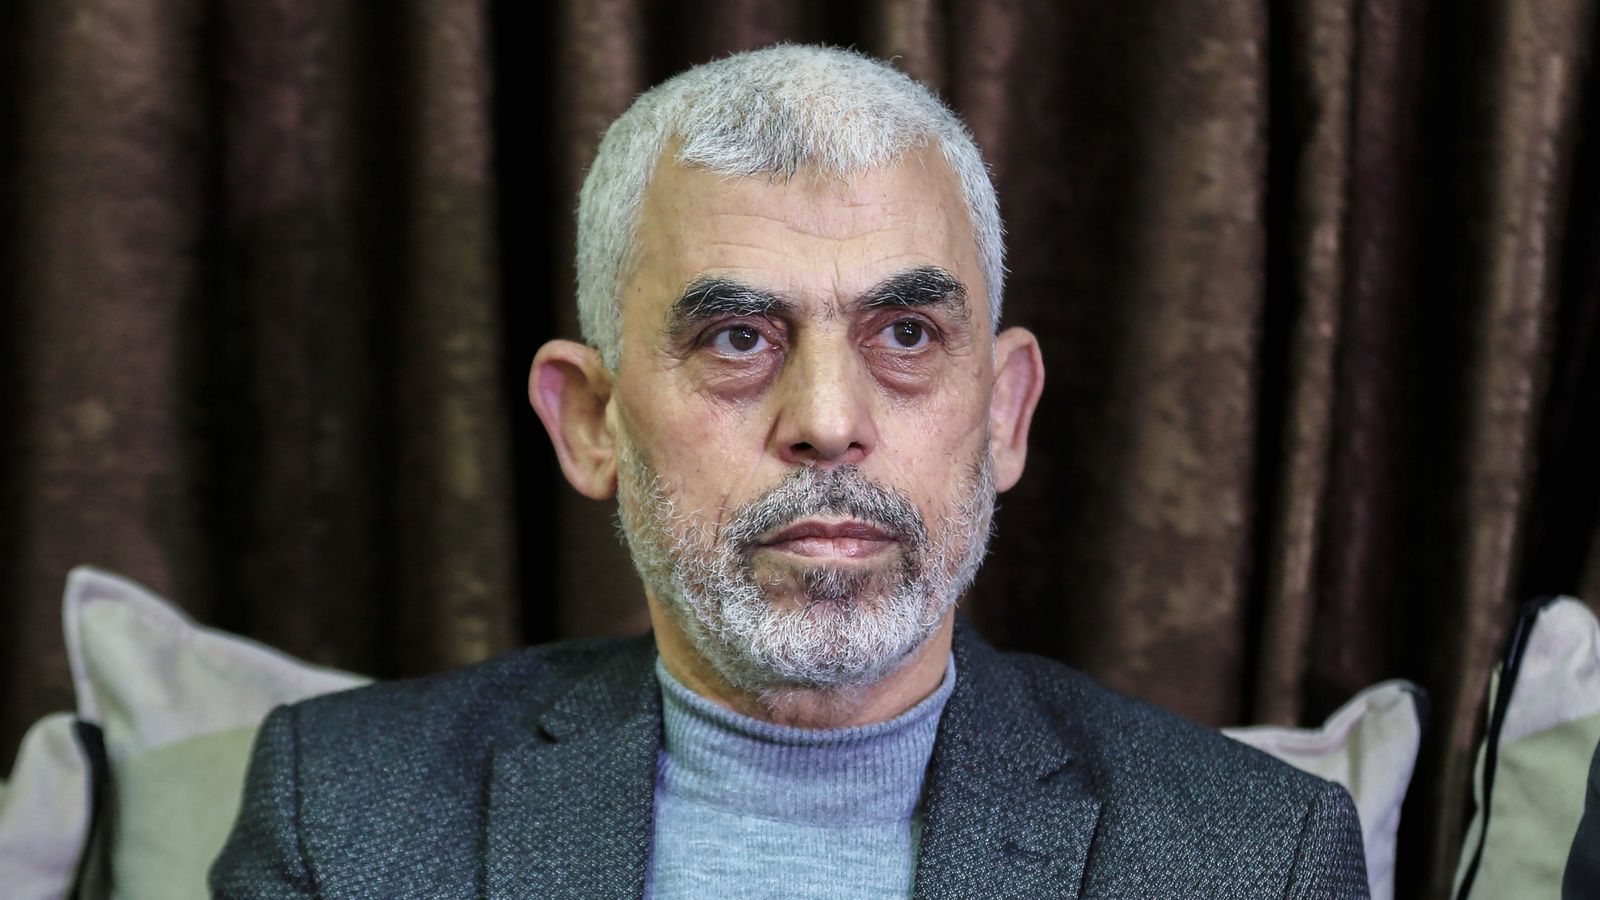 يحيى السنوار: زعيم حماس في غزة لم يتوقع أن تكون عواقب هجوم 7 أكتوبر “بهذه الخطورة”، كما يقول صديق |  اخبار العالم